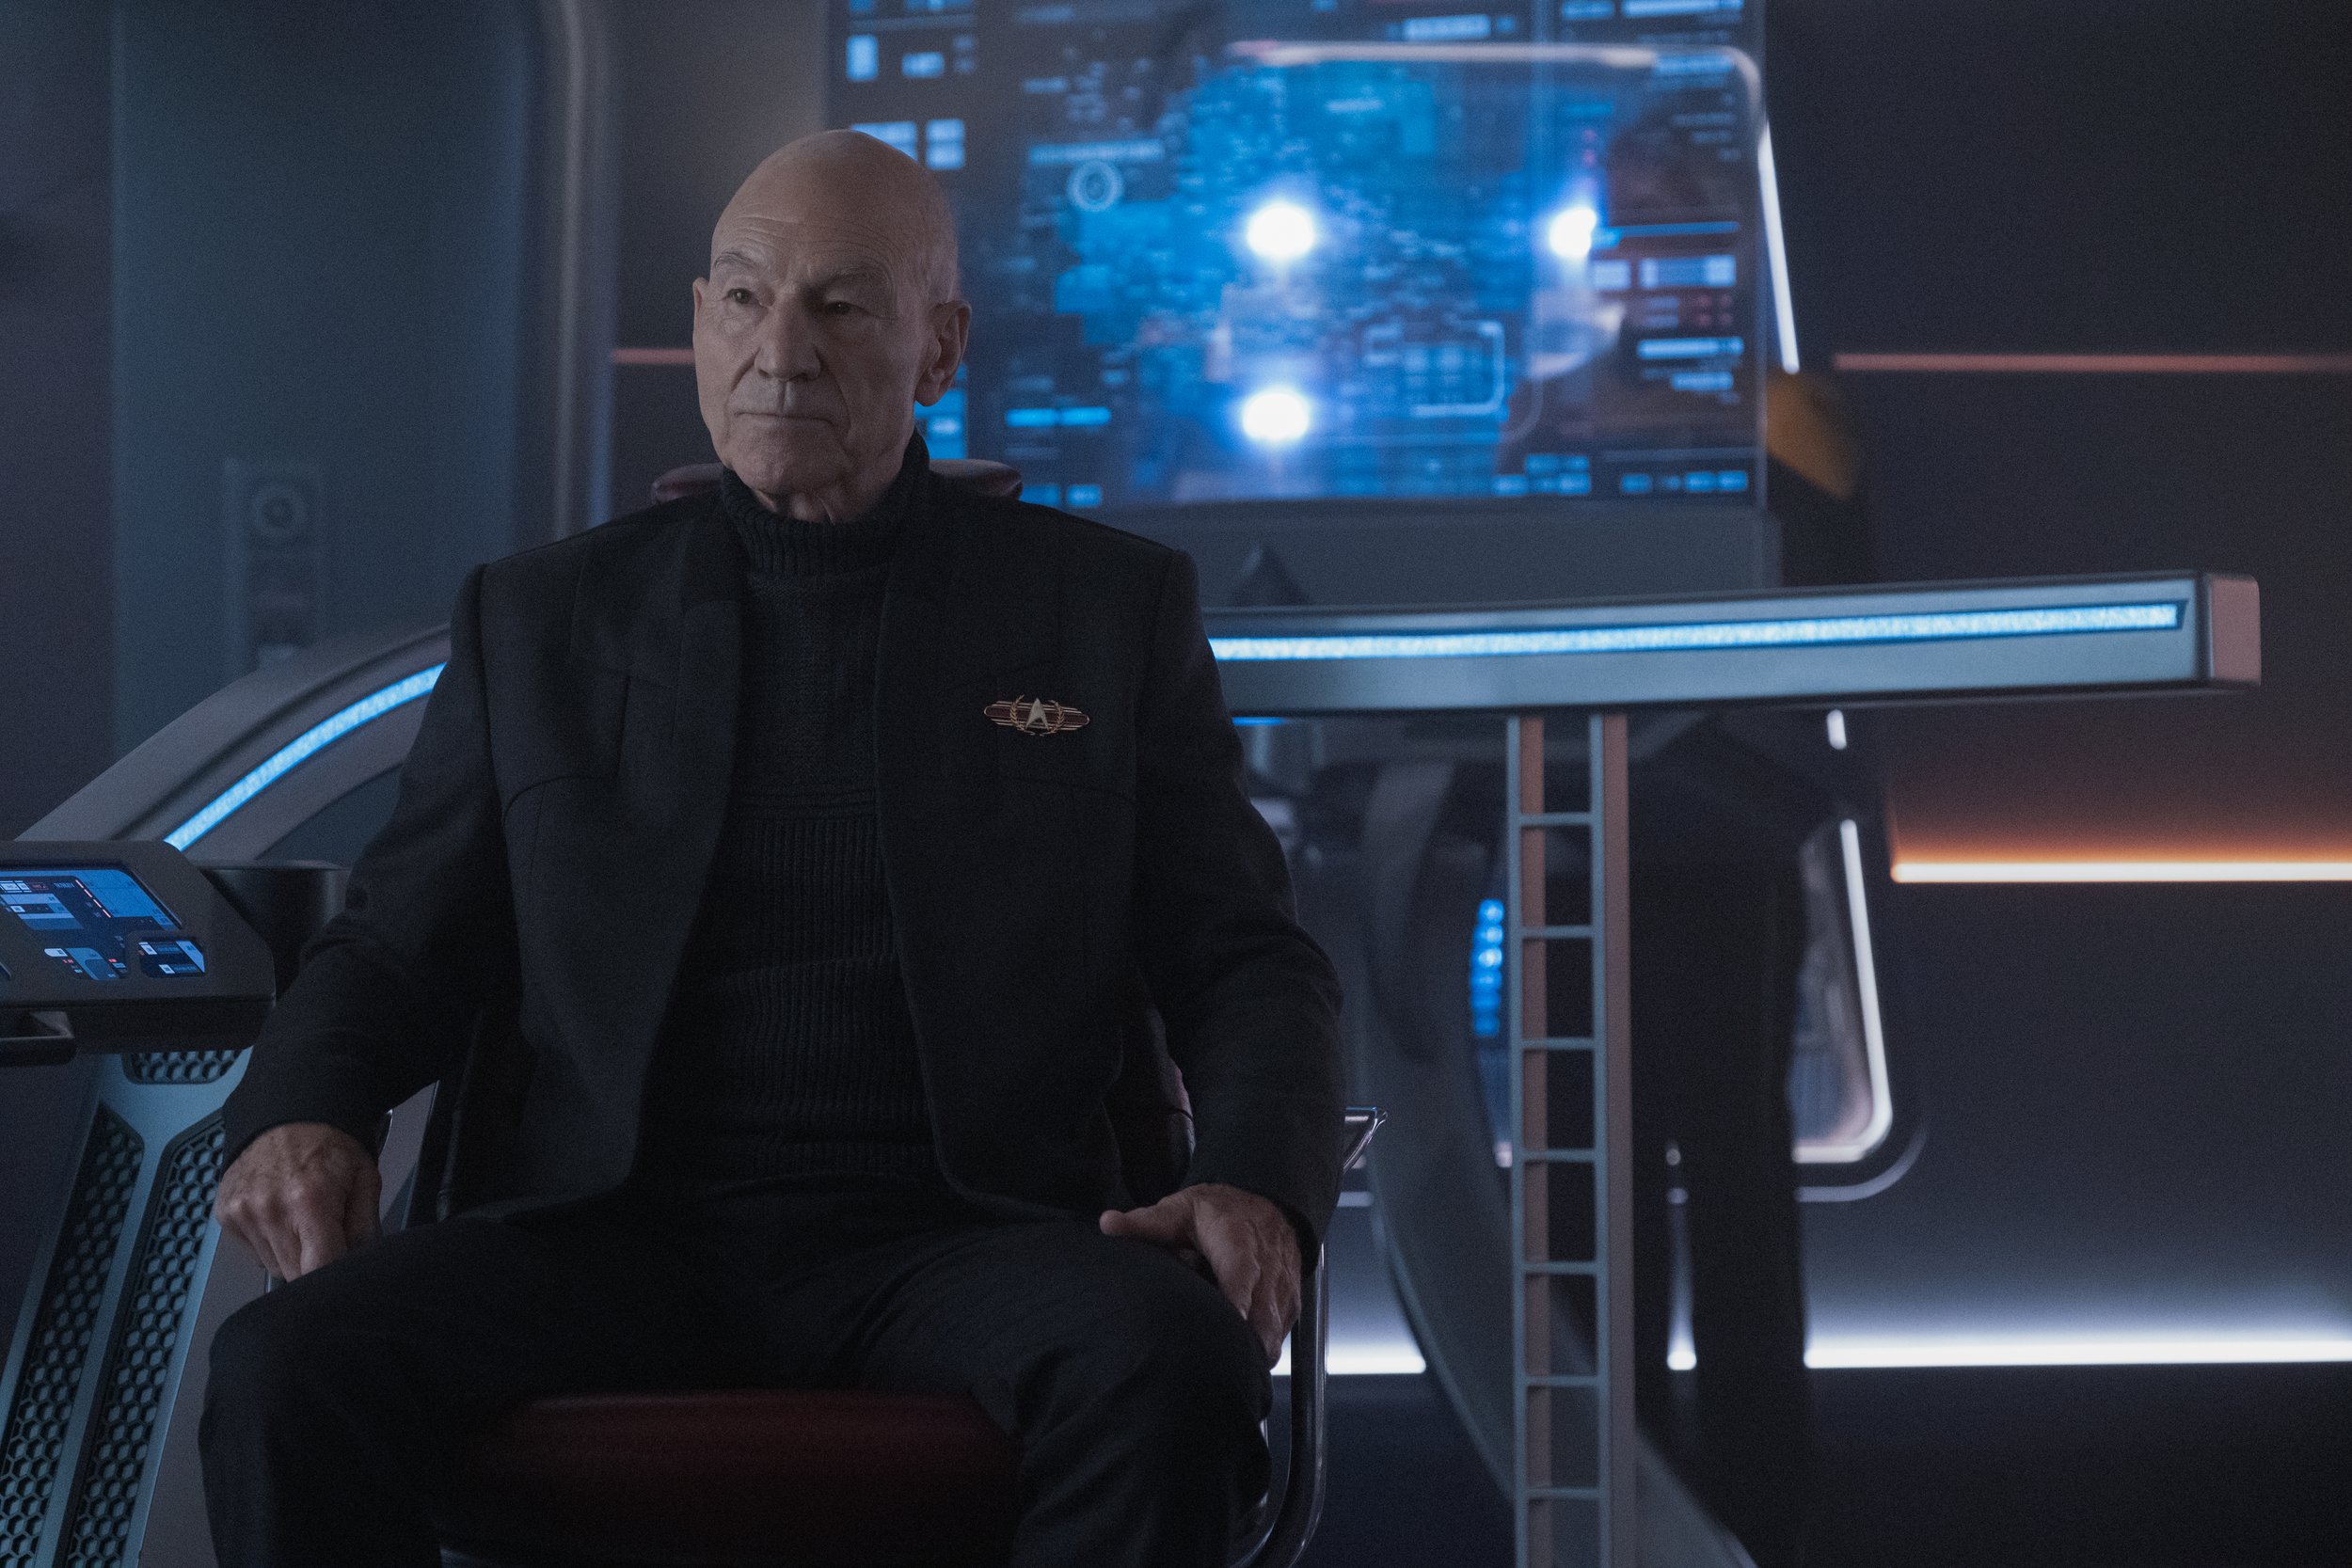   Patrick Stewart  as Picard.  Image: Trae Patton/Paramount+.  